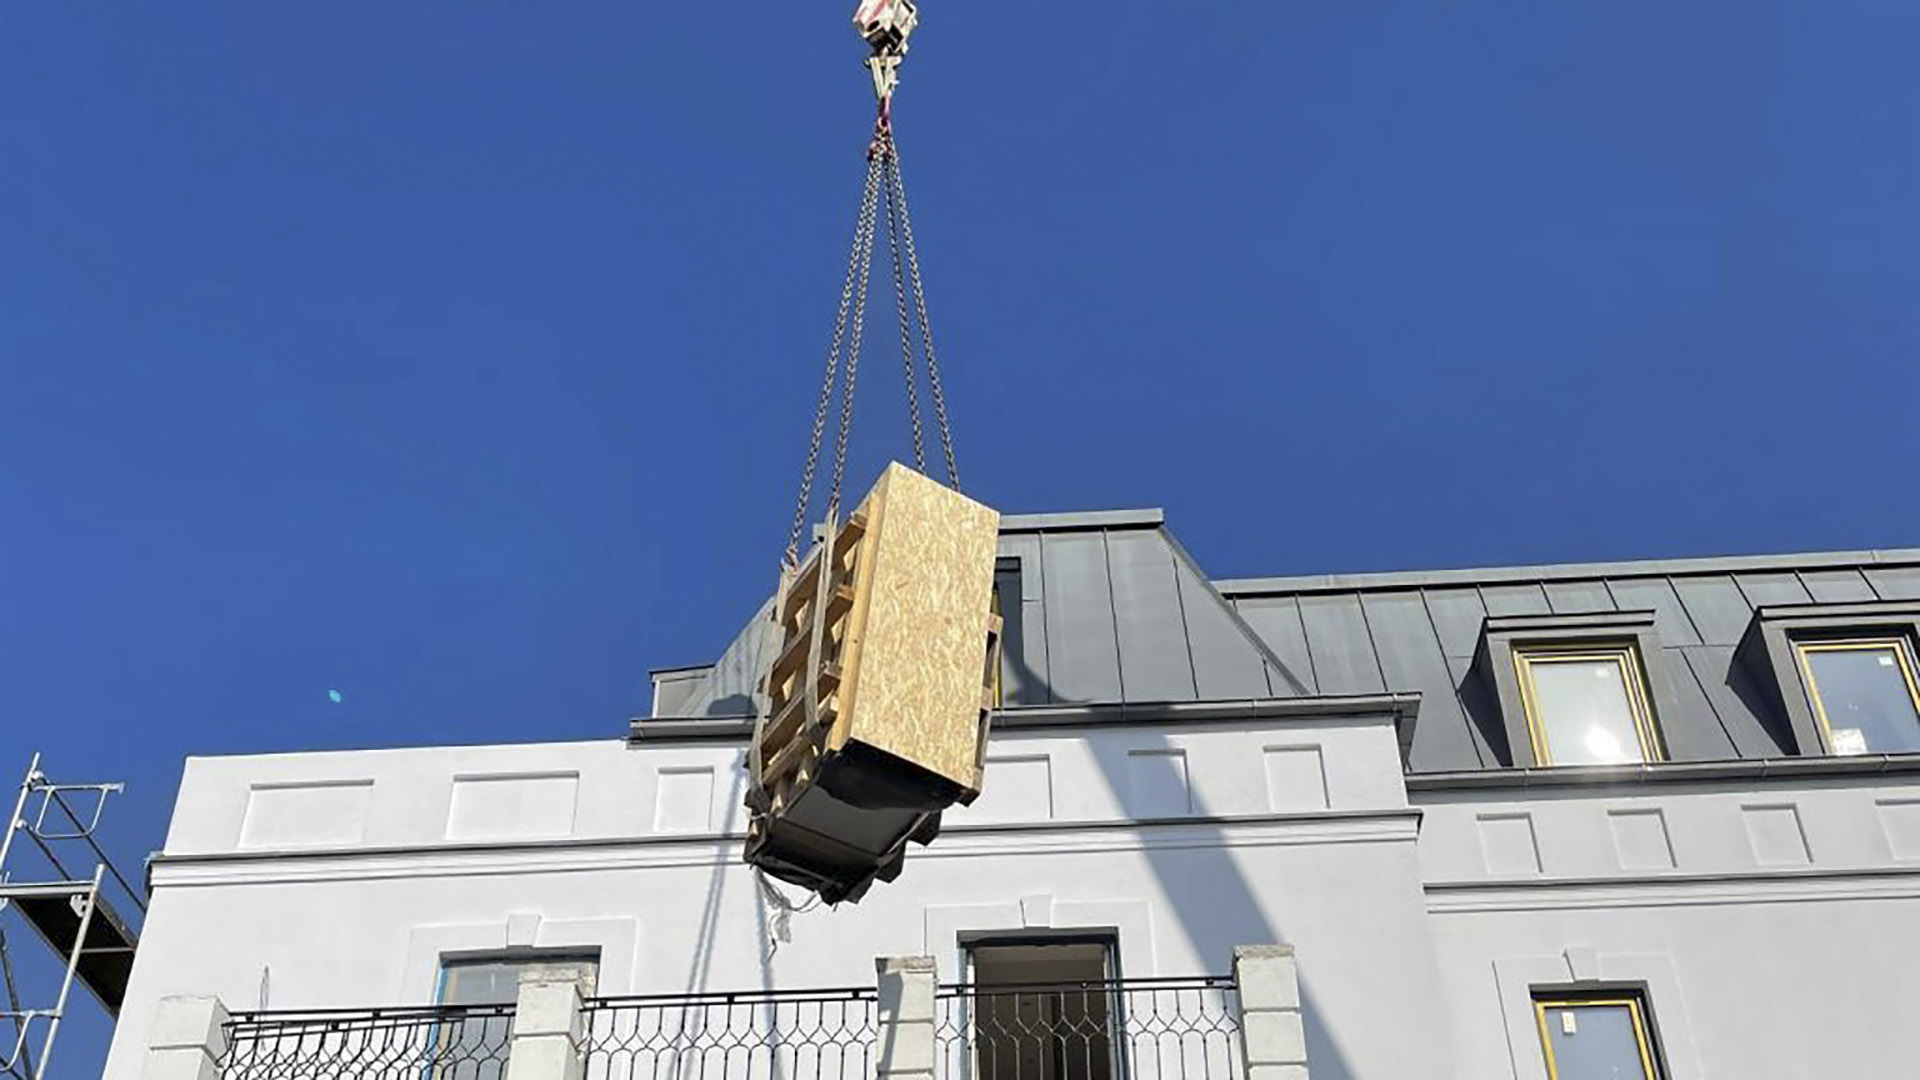 Nyolcszáz kilós trezort emeltek be daruval Mészáros Lőrinczék házába